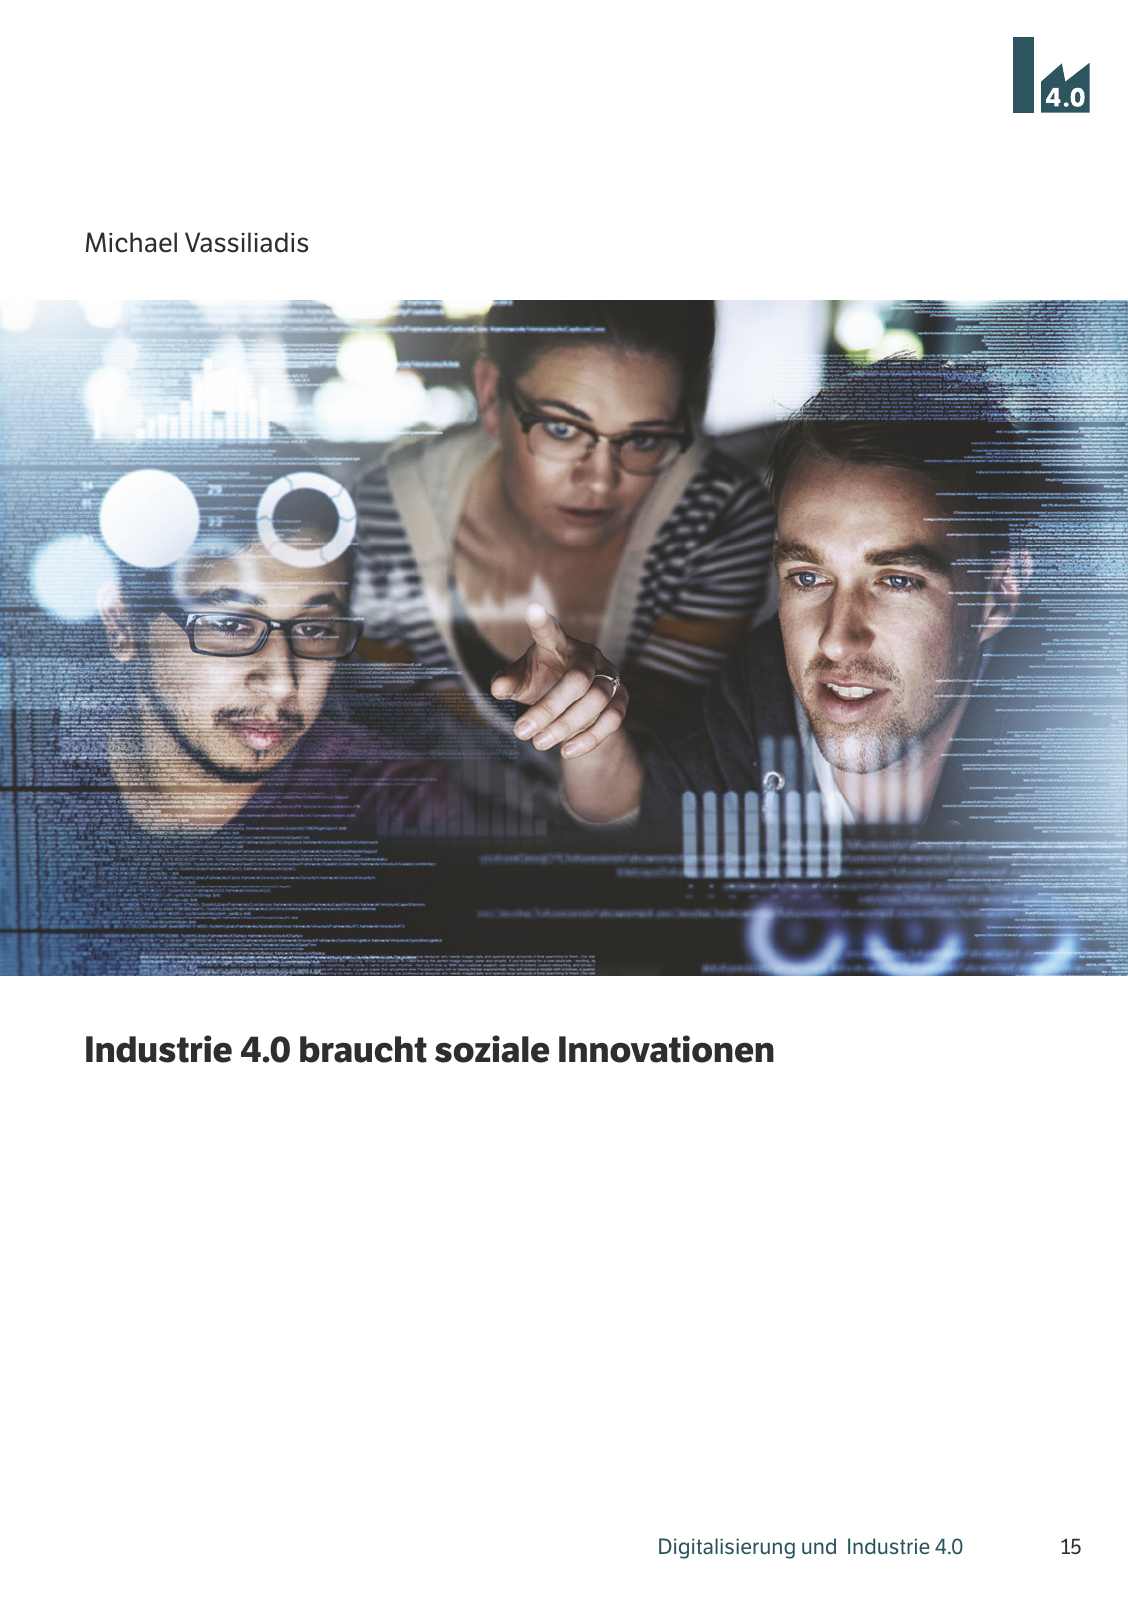 Vorschau M. Vassiliadis // Digitalisierung und Industrie 4.0 Seite 15